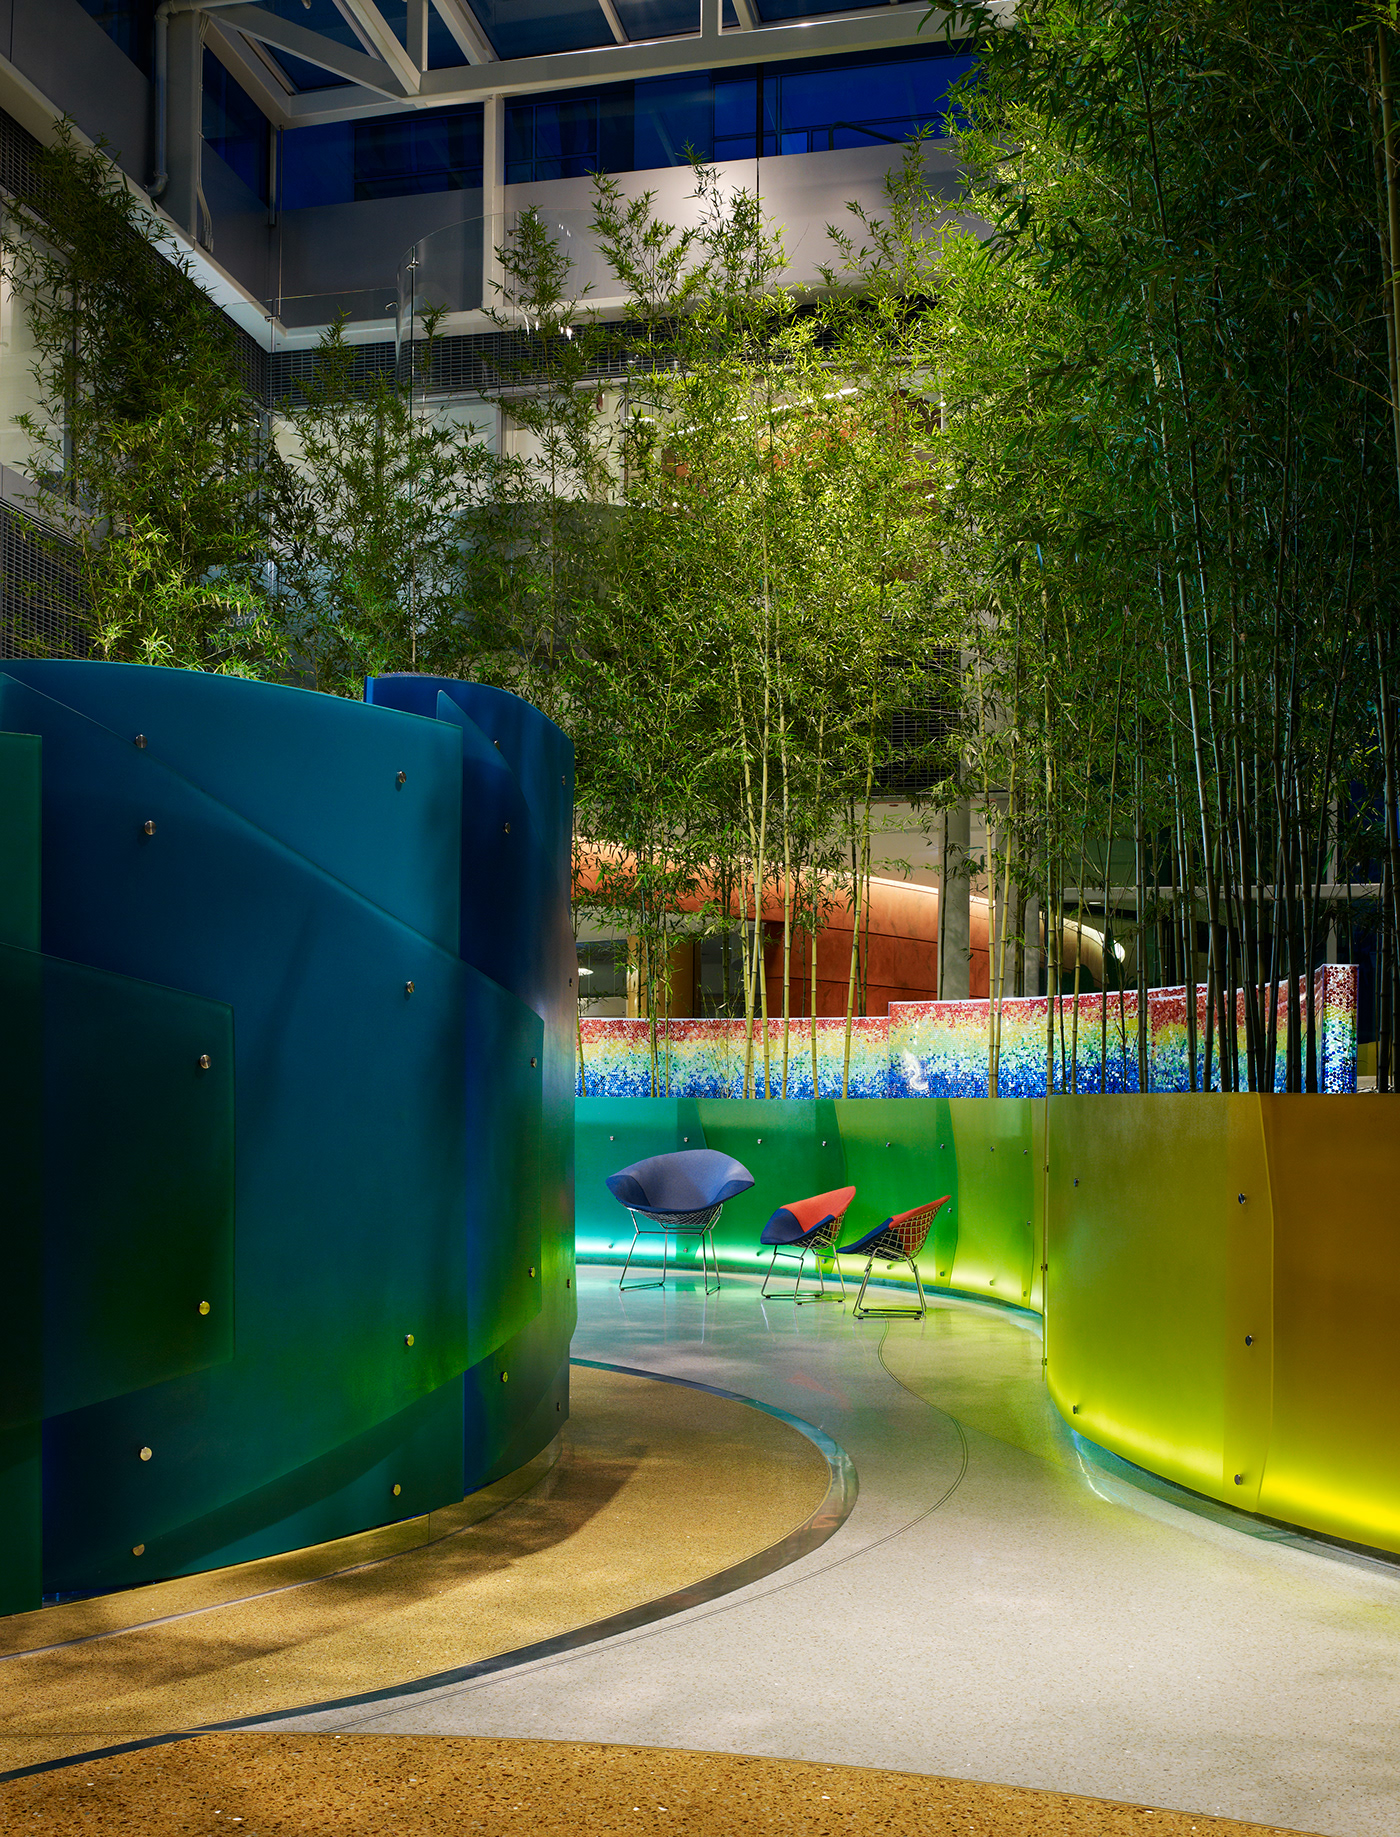 chicago healing garden children hospital interactive light Landscape play relax